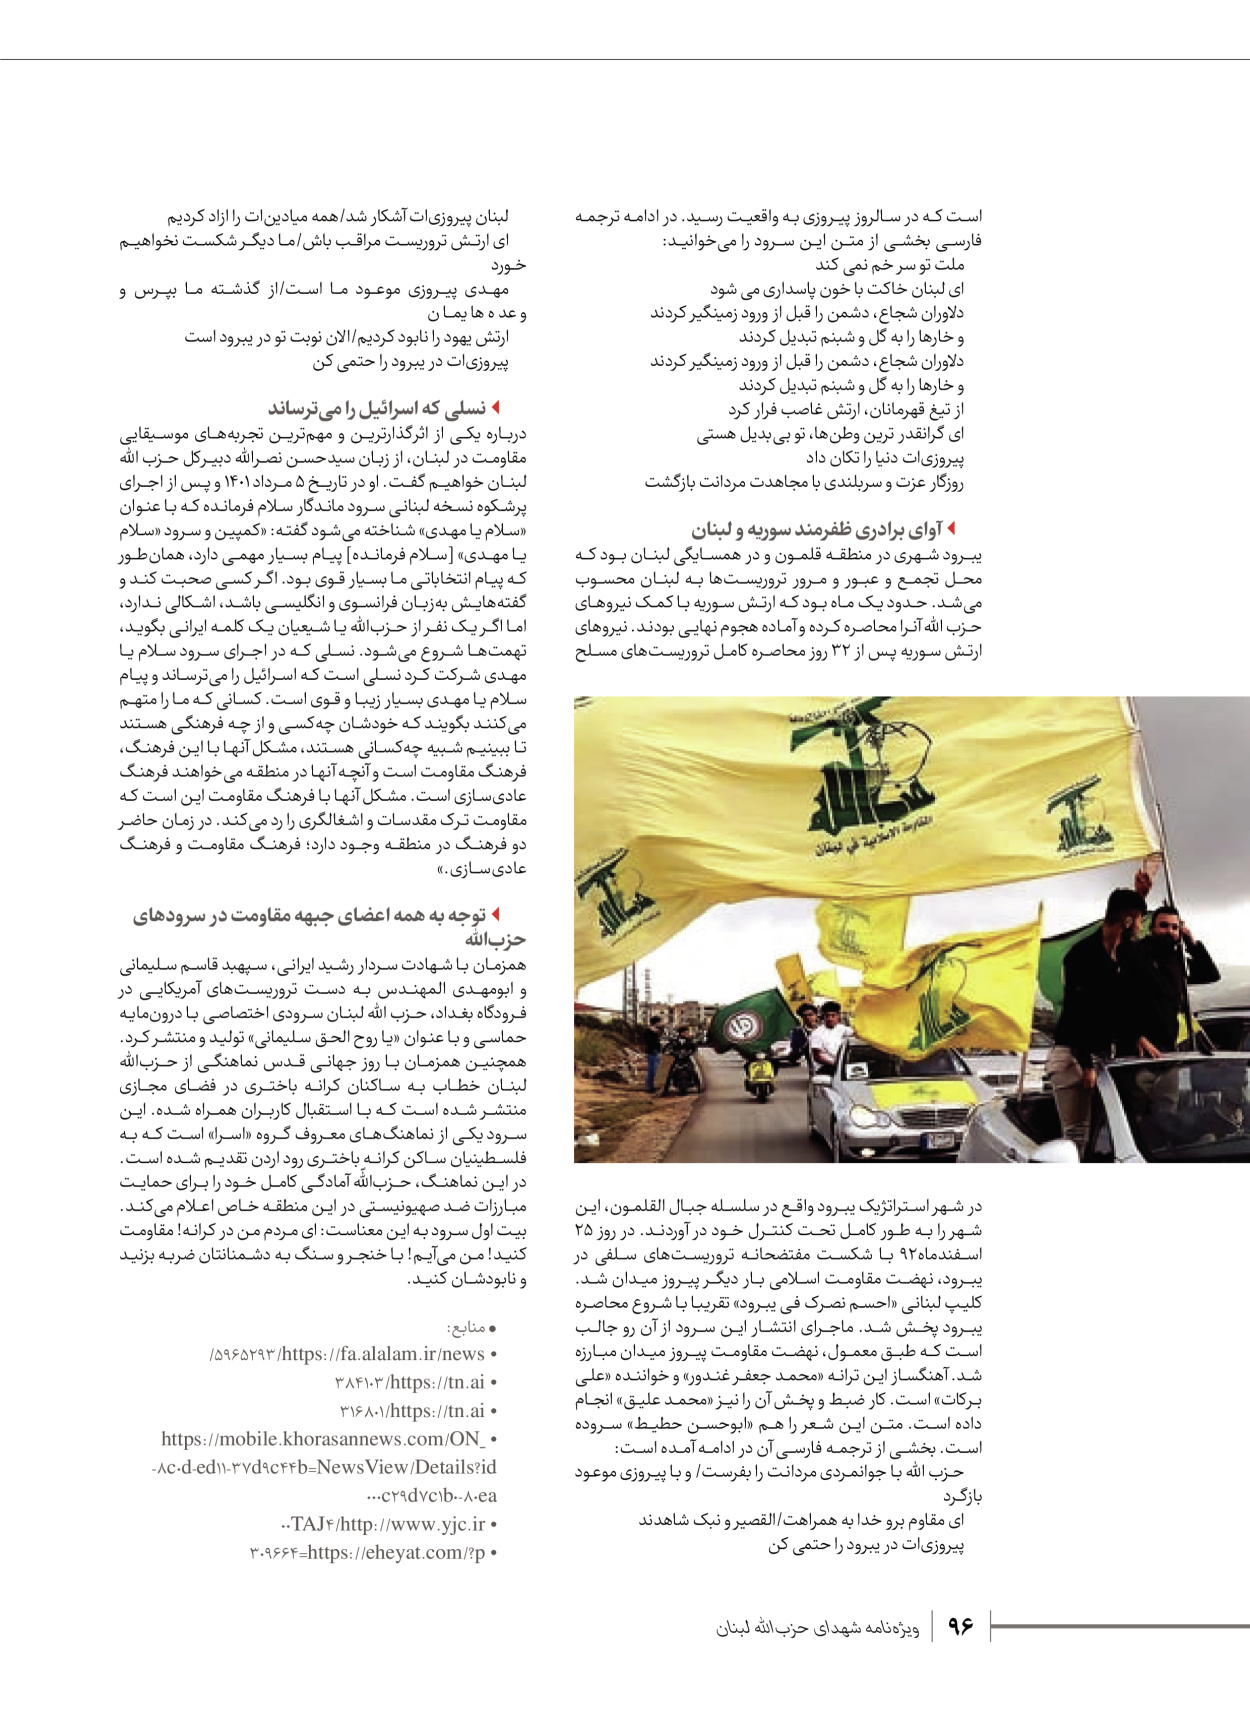 روزنامه ایران - ویژه نامه شهدای قدس ۶ - ۲۵ فروردین ۱۴۰۳ - صفحه ۹۶